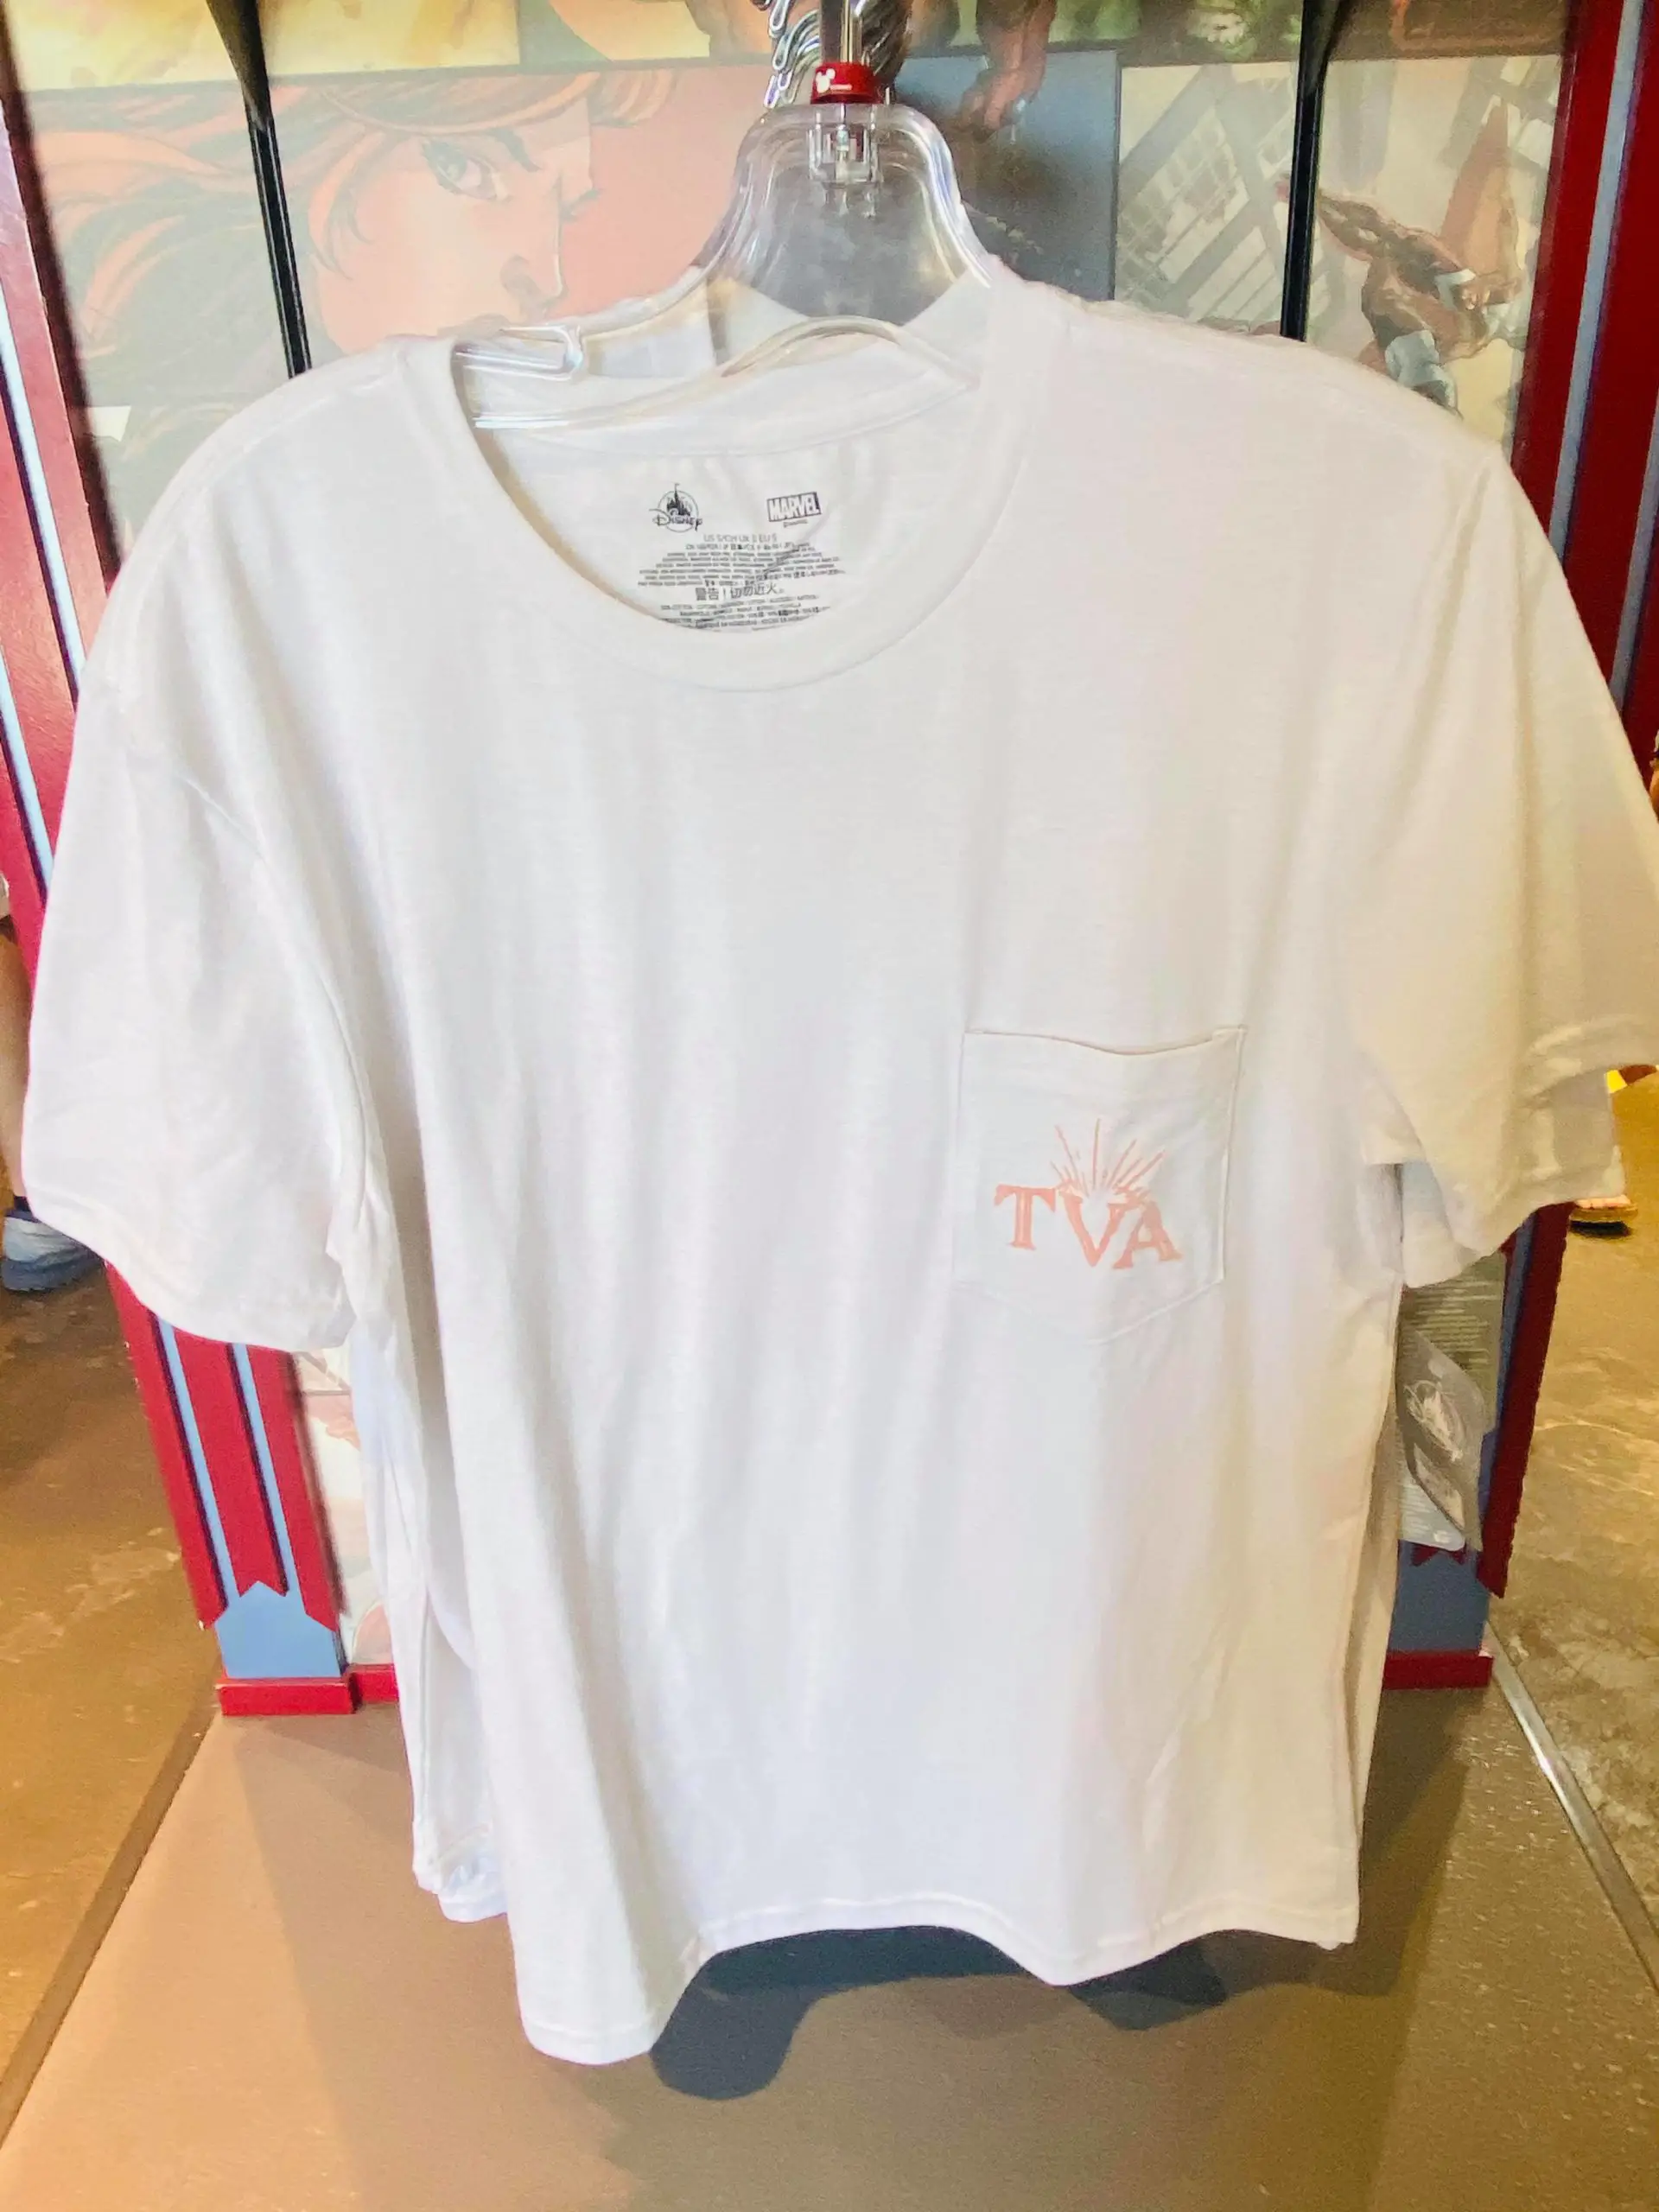 TVA Logo on White T-Shirt at Disney Springs